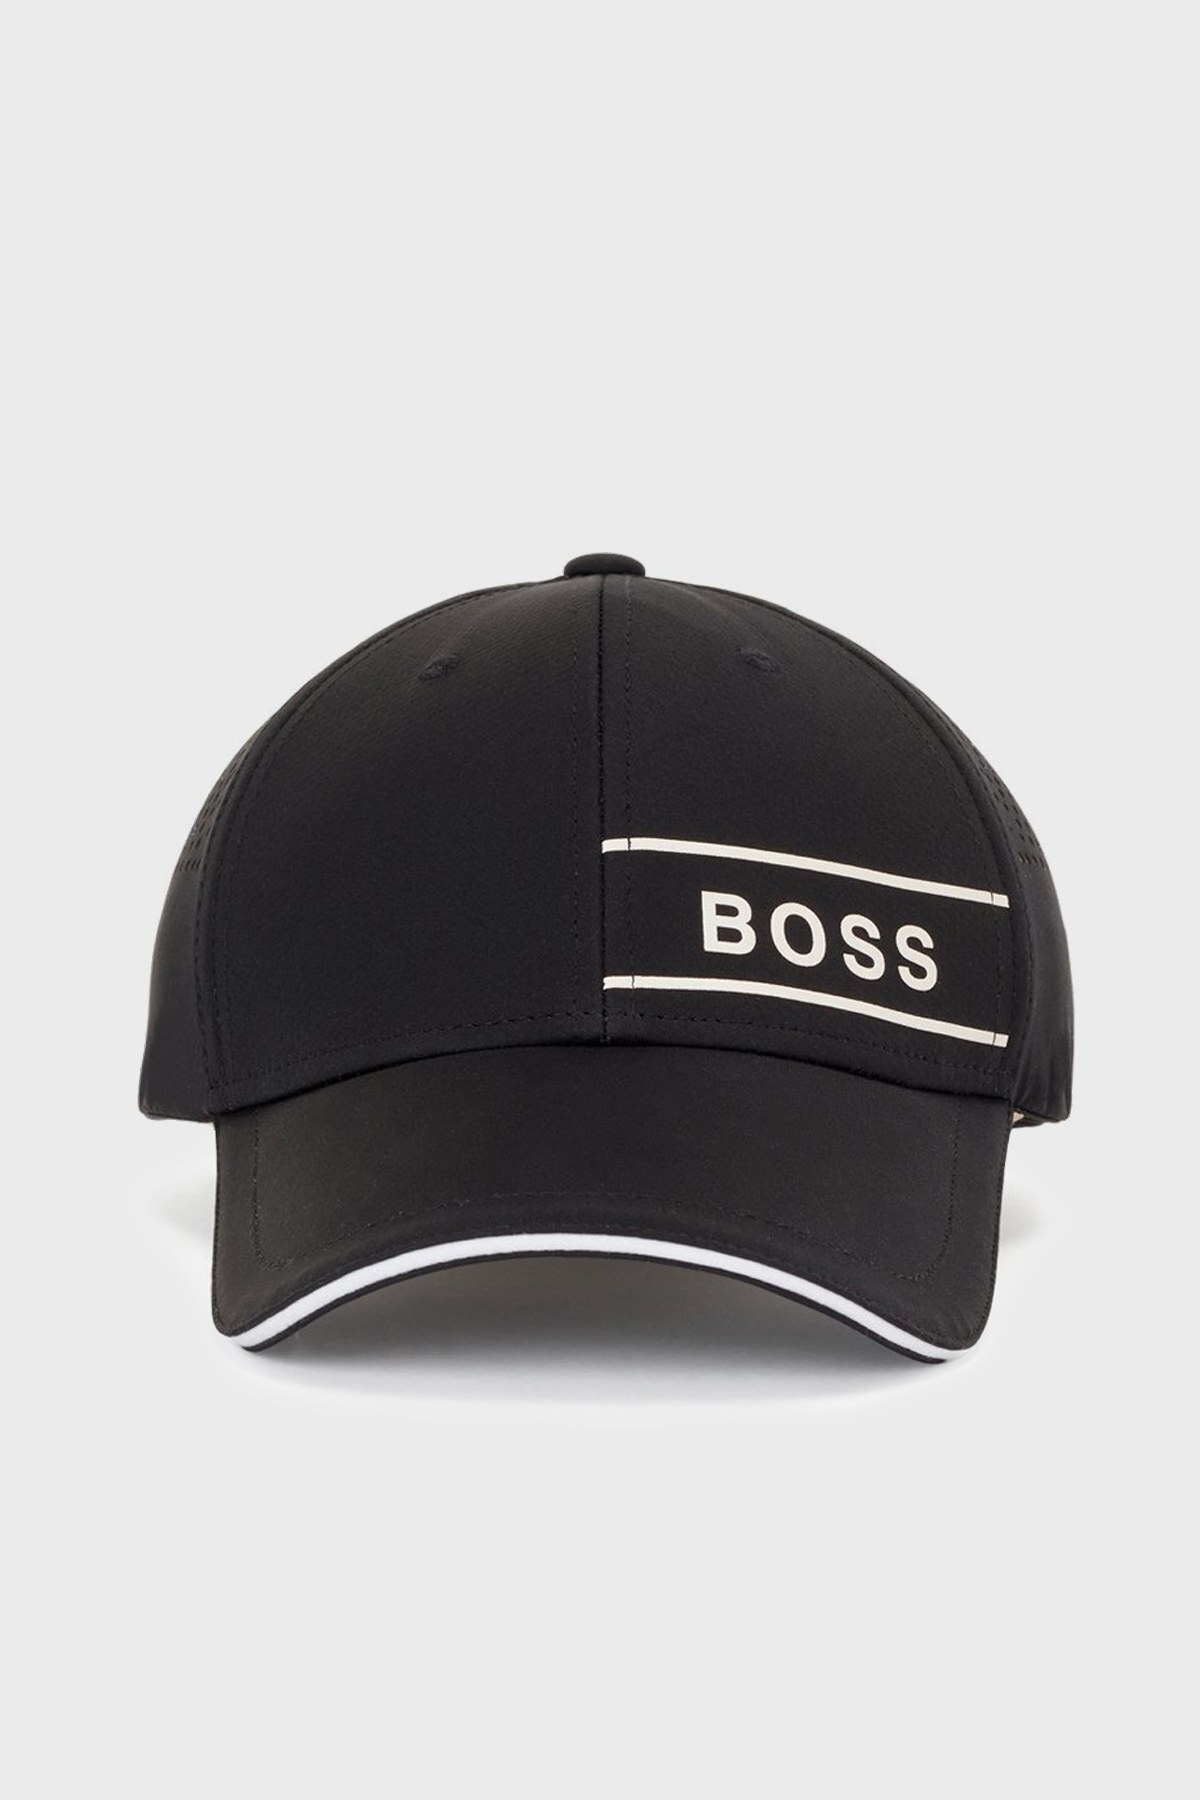 Boss Logo Detaylı Su Geçirmez Erkek Şapka 50462089 001 SİYAH